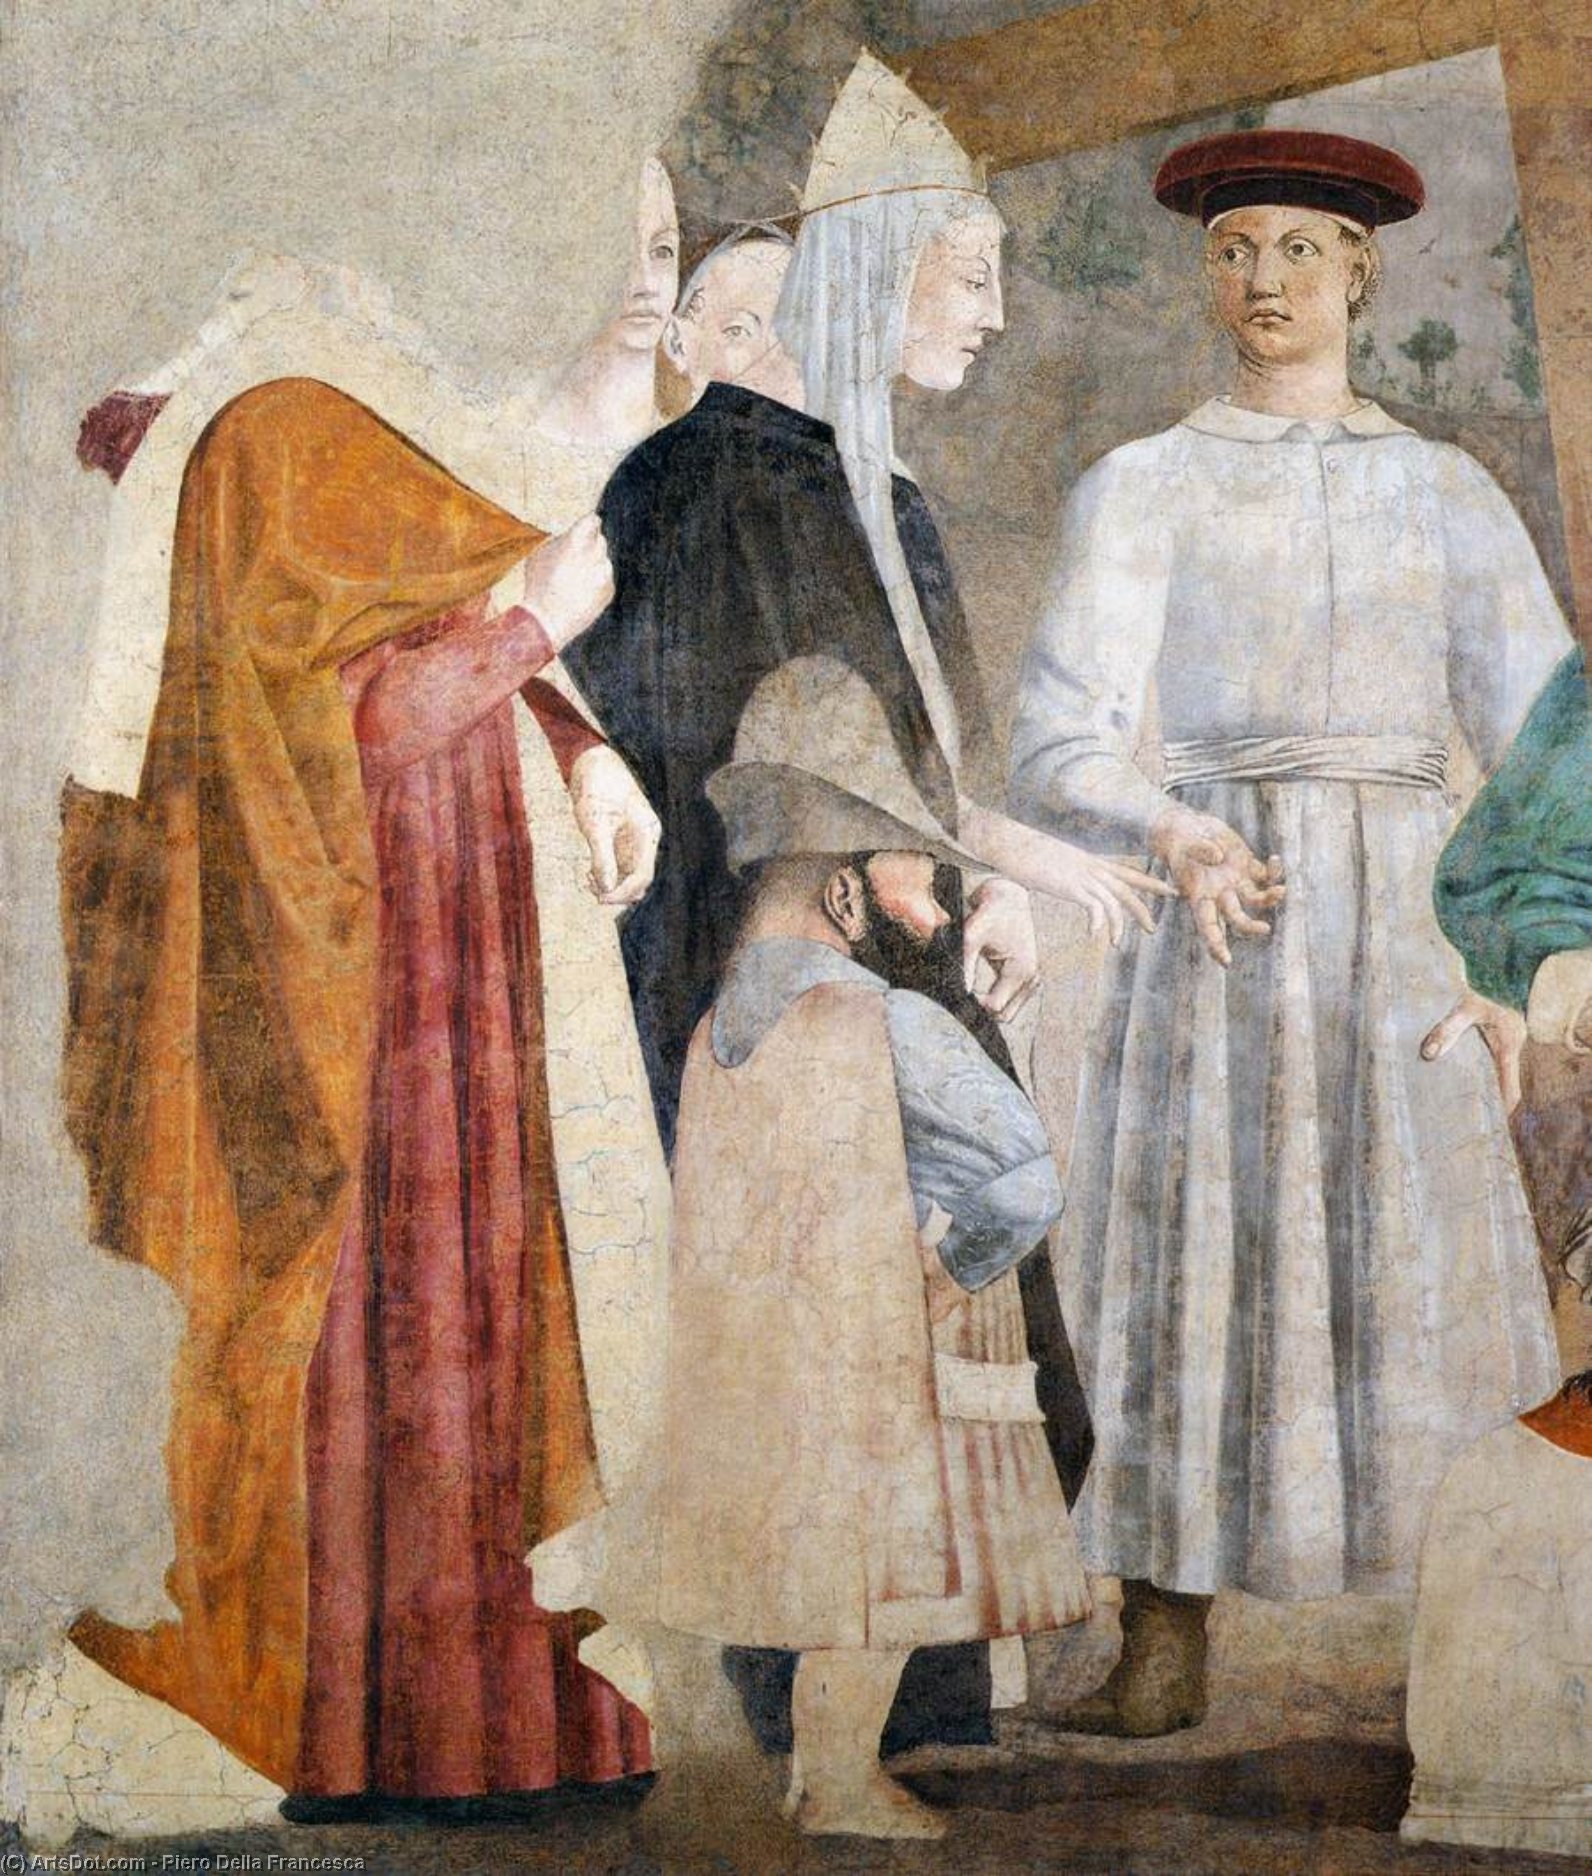 WikiOO.org - Encyclopedia of Fine Arts - Lukisan, Artwork Piero Della Francesca - 7a. Finding of the True Cross (detail)